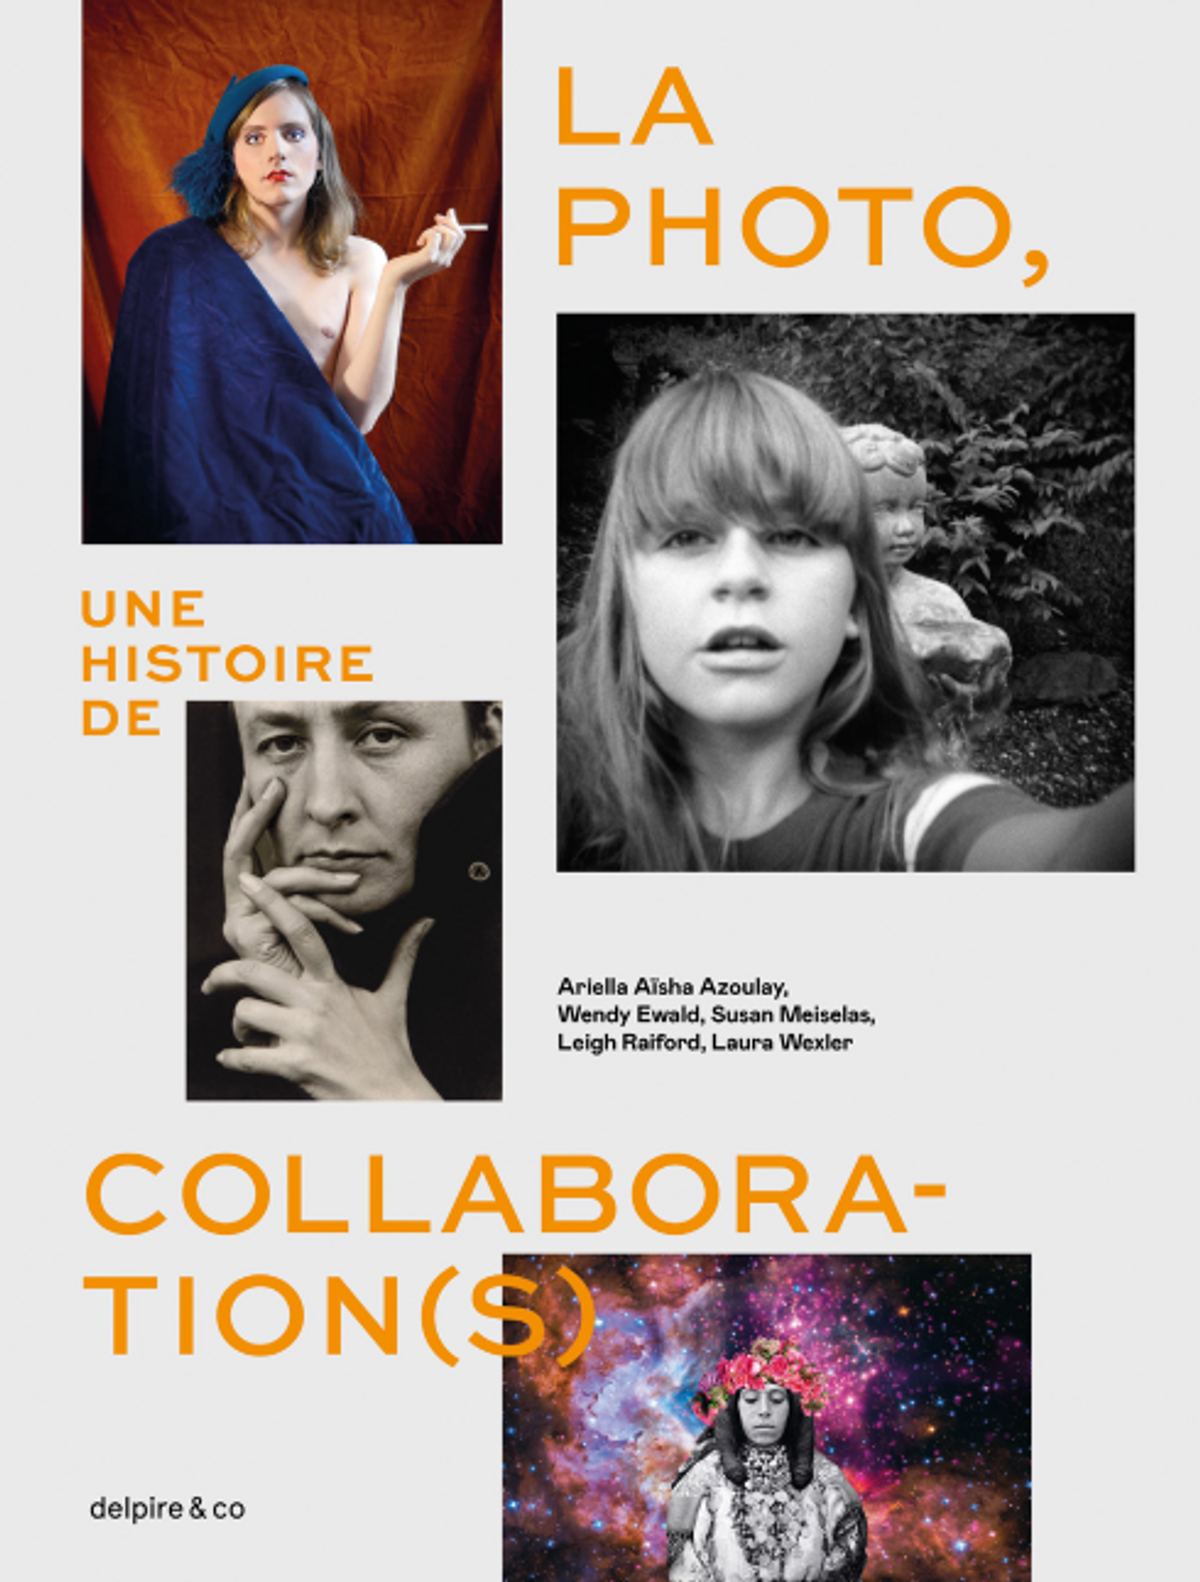 Ariella Aïsha Azoulay, Wendy Ewald, Susan Meiselas et al. (dir.), La Photo, une histoire de collaboration(s), Paris, delpire & co, 2023, 288 pages, 65 euros.